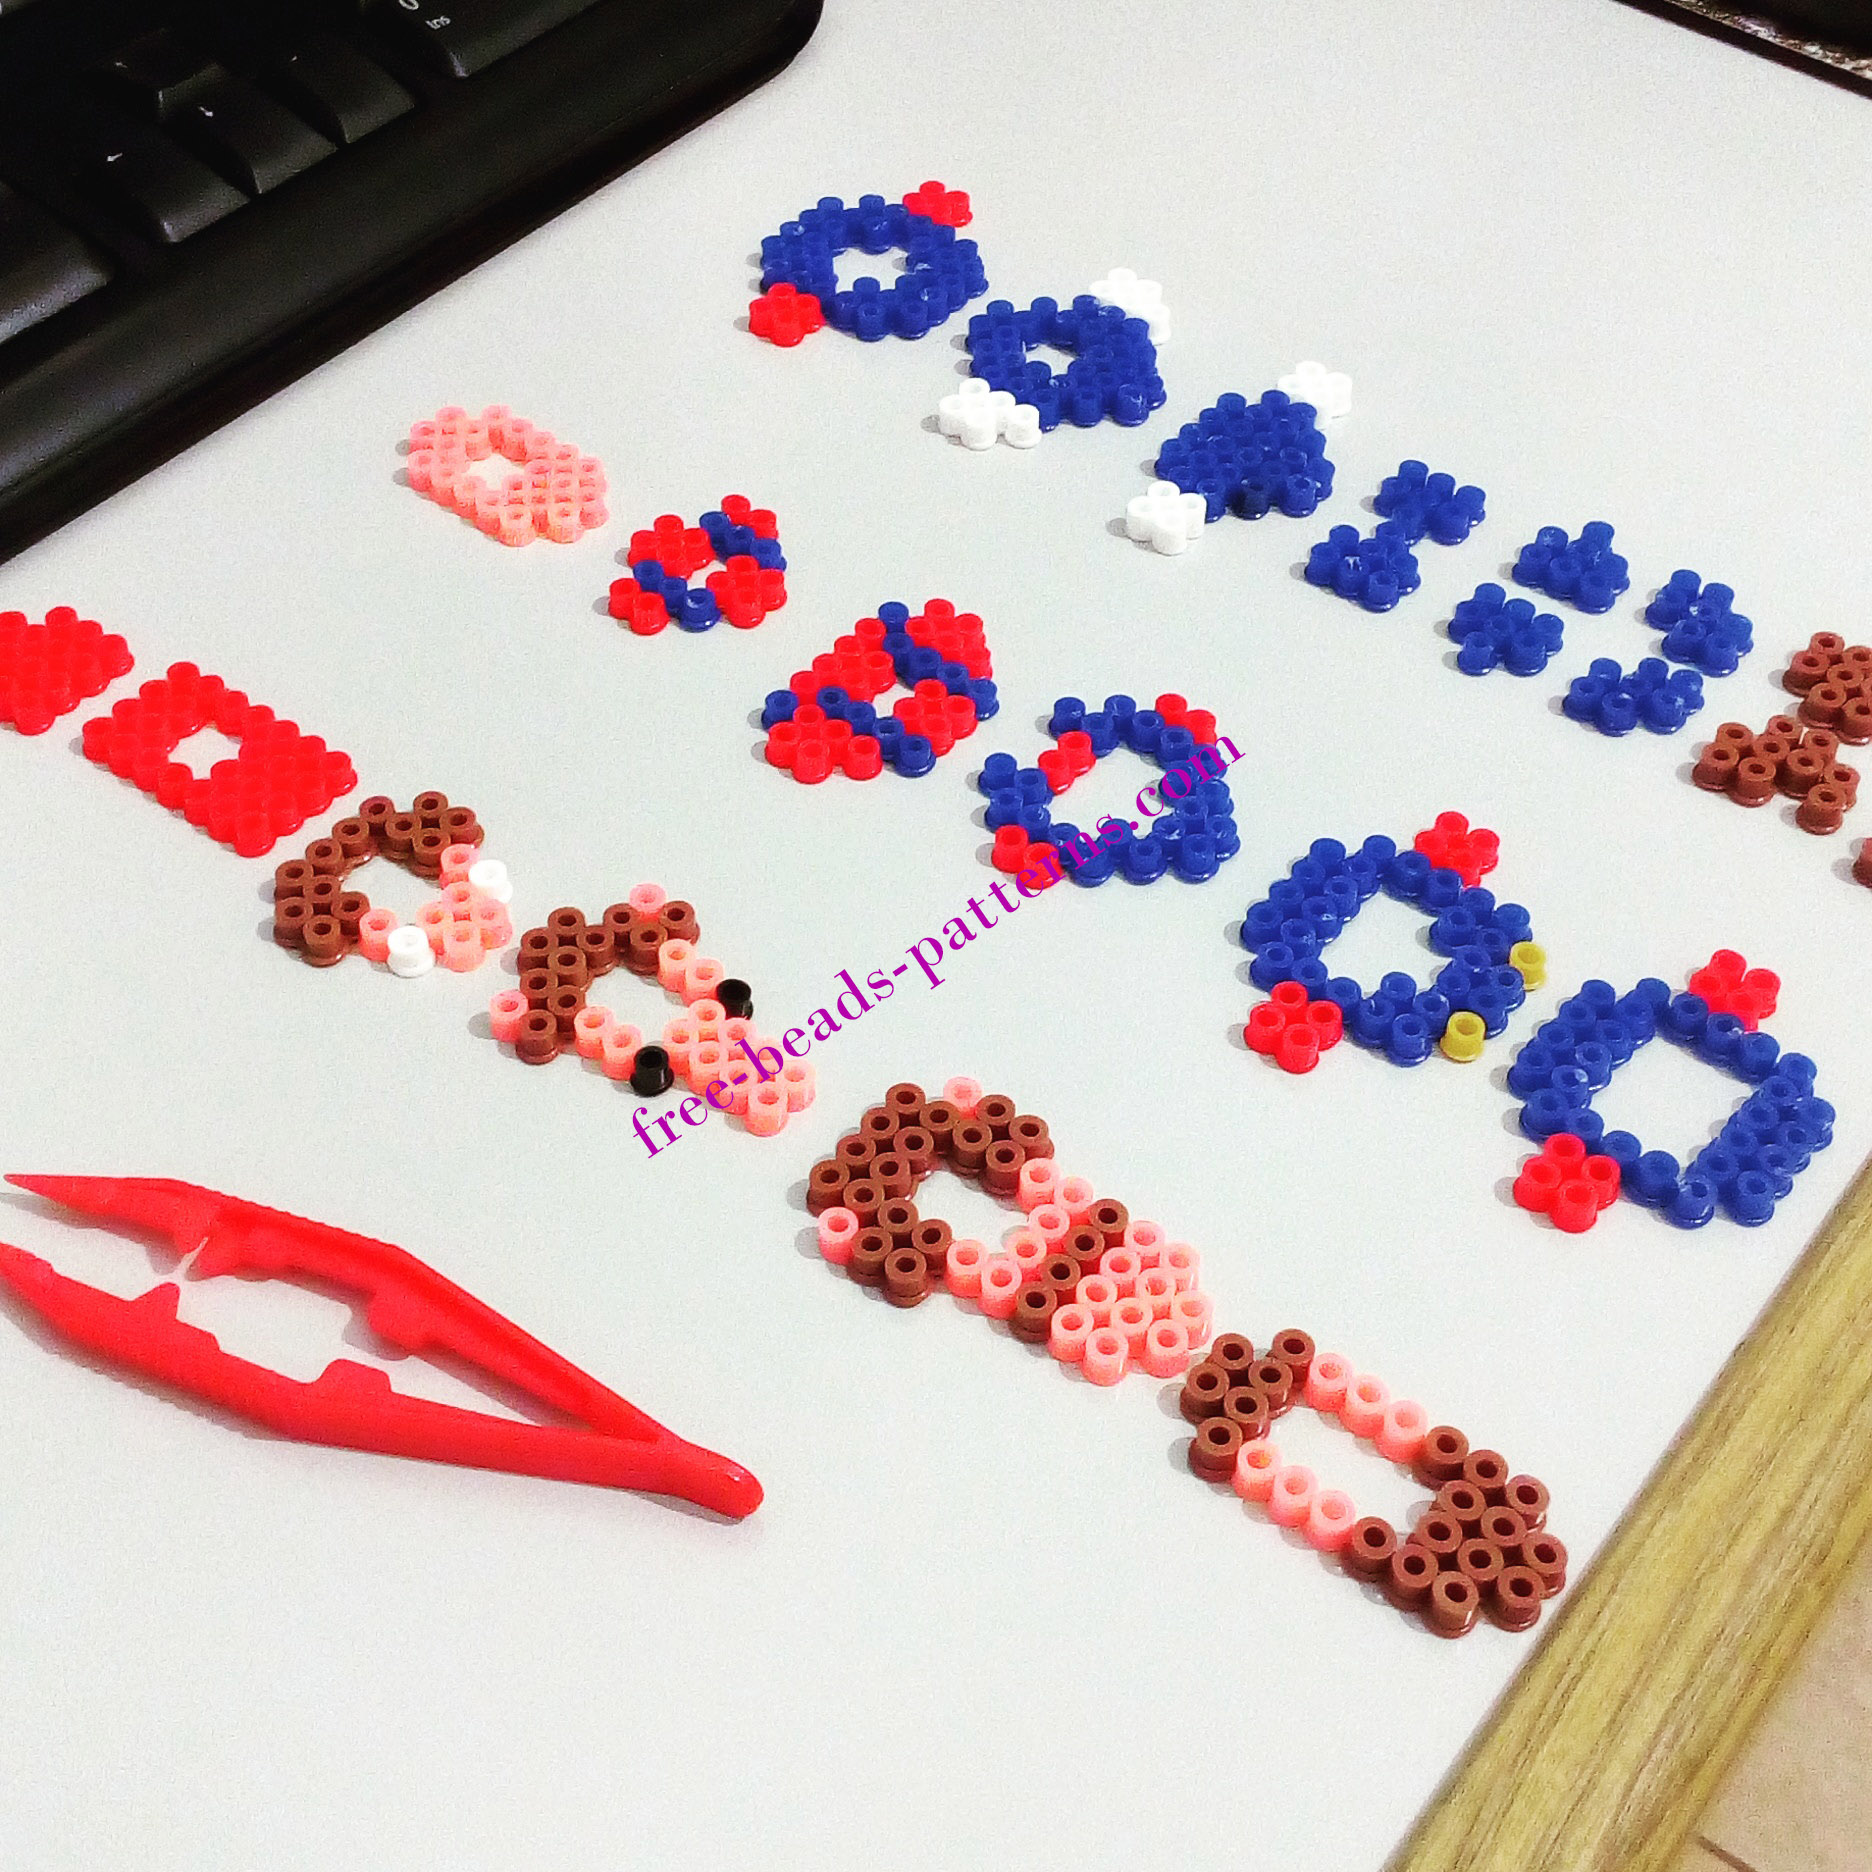 3D Super Mario perler beads melty beads work photos by Bill (2)